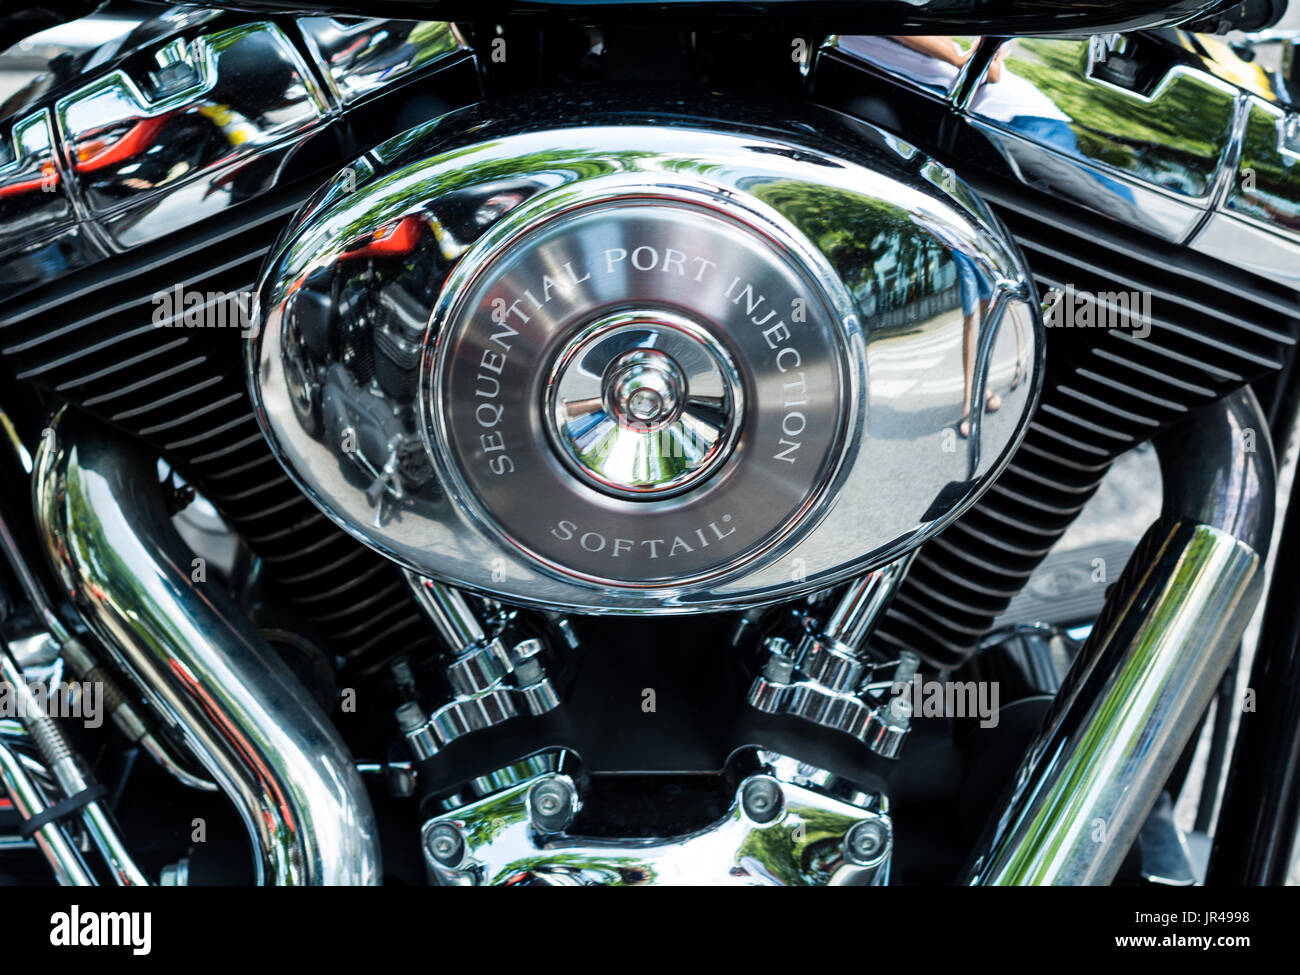 Zeigen Sie klassische amerikanische Motorräder. Details zu Motorradteilen. Vintage-Filtereffekt Stockfoto